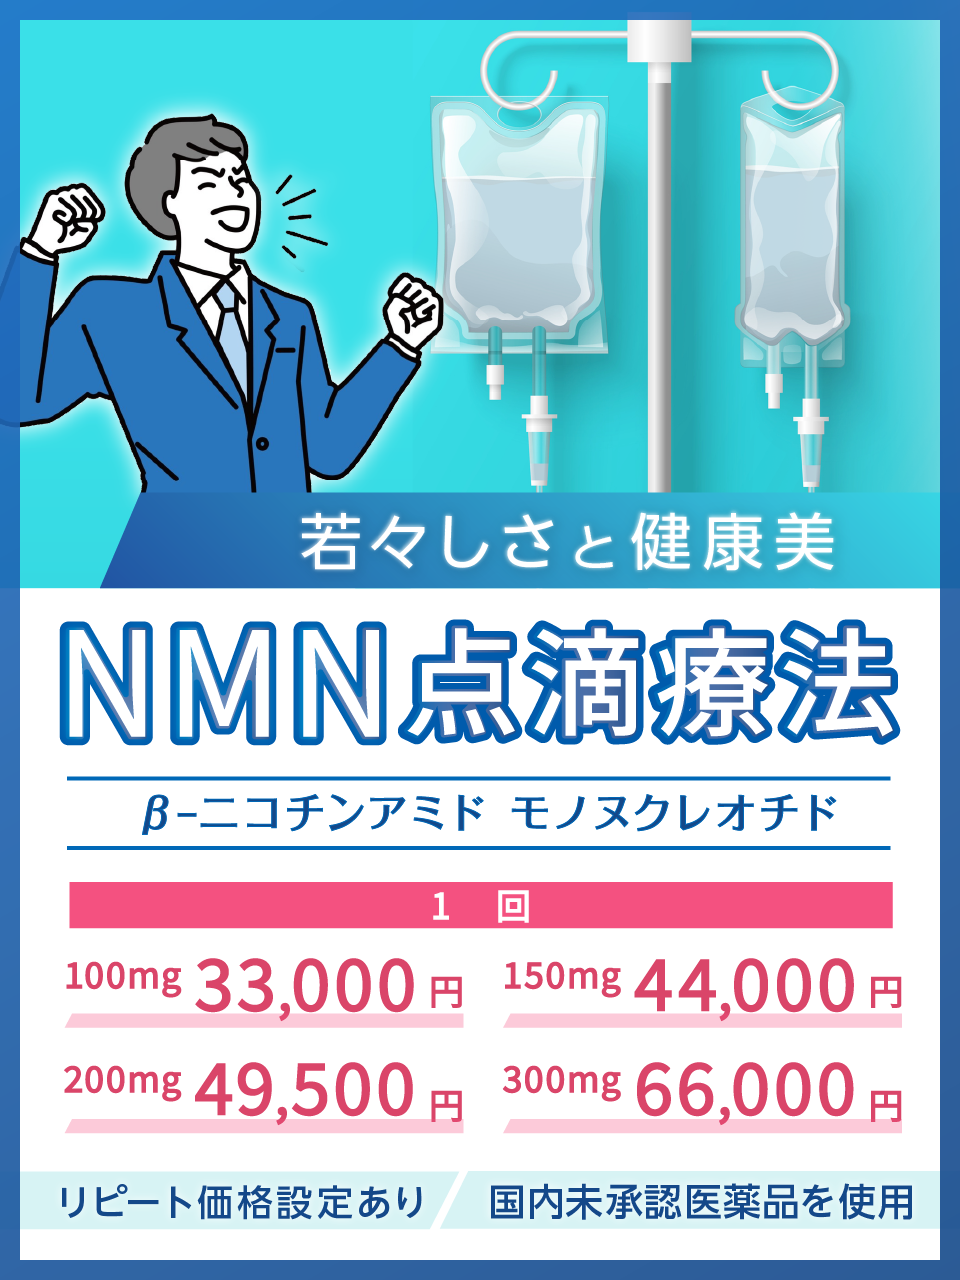 若々しさと健康美 NMN点滴療法 βｰﾆｺﾁﾝｱﾐﾄﾞ ﾓﾉﾇｸﾚｵﾁﾄﾞリピート価格設定あり 国内未承認医薬品を使用